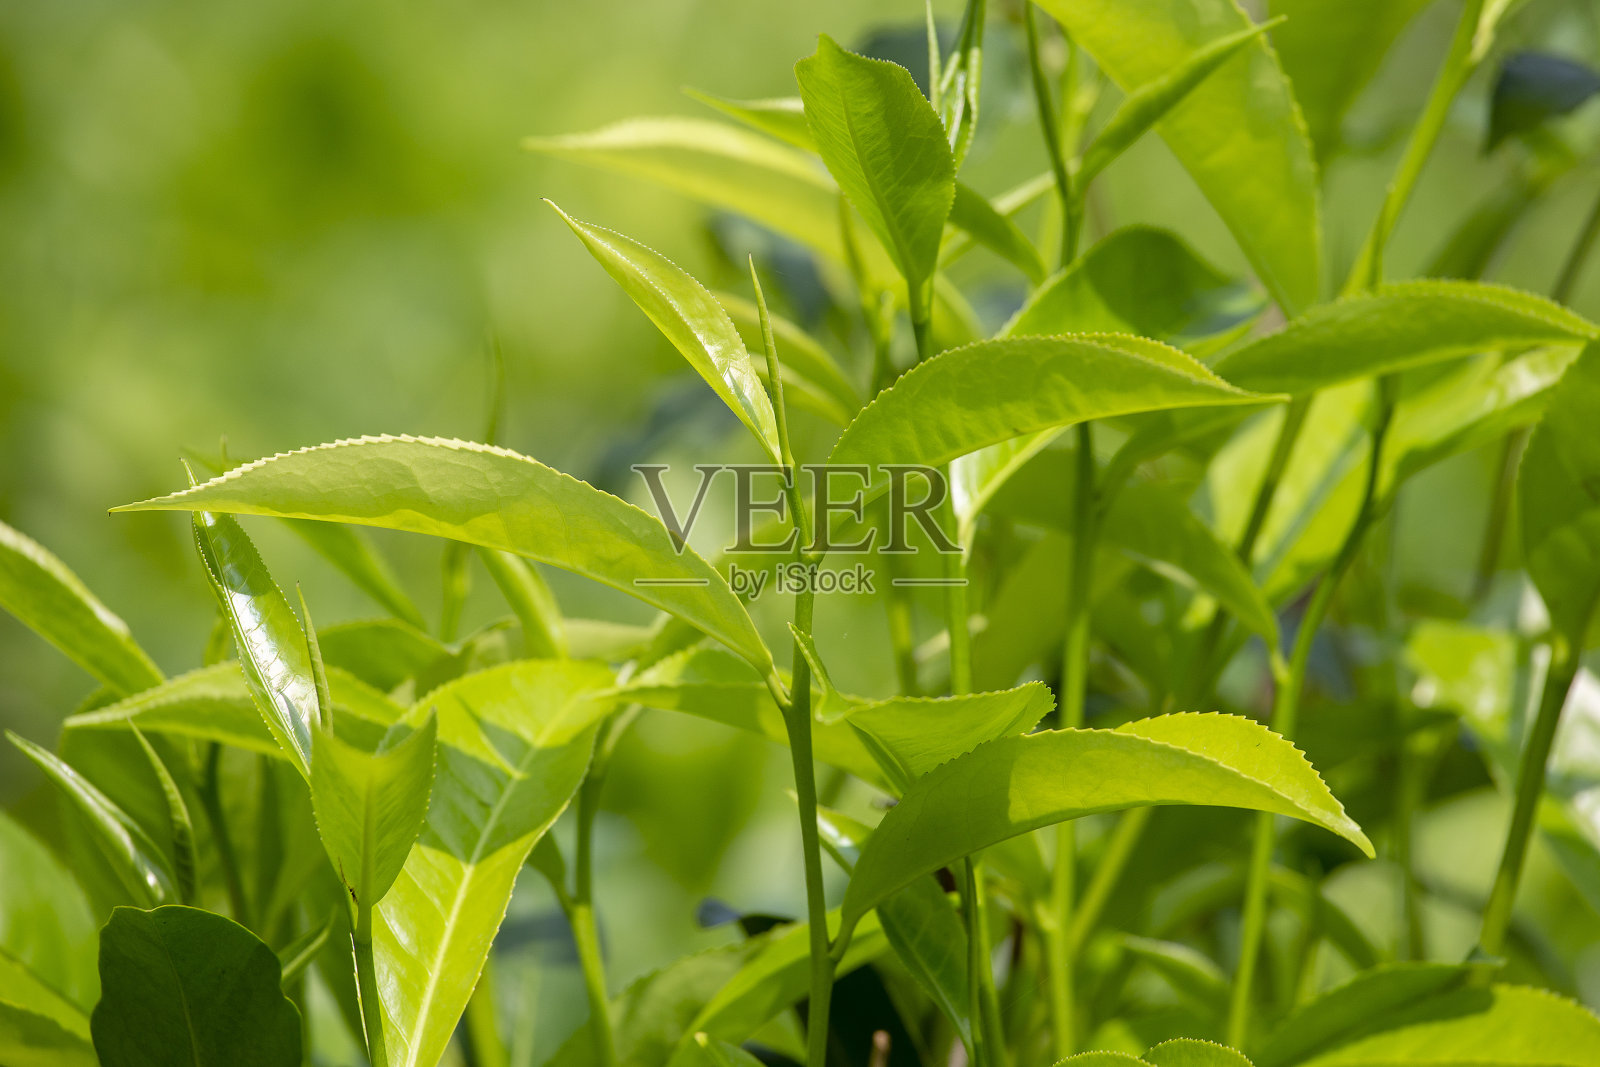 斯里兰卡努瓦拉·埃利亚种植园茶树的嫩绿叶片和叶芽。照片摄影图片